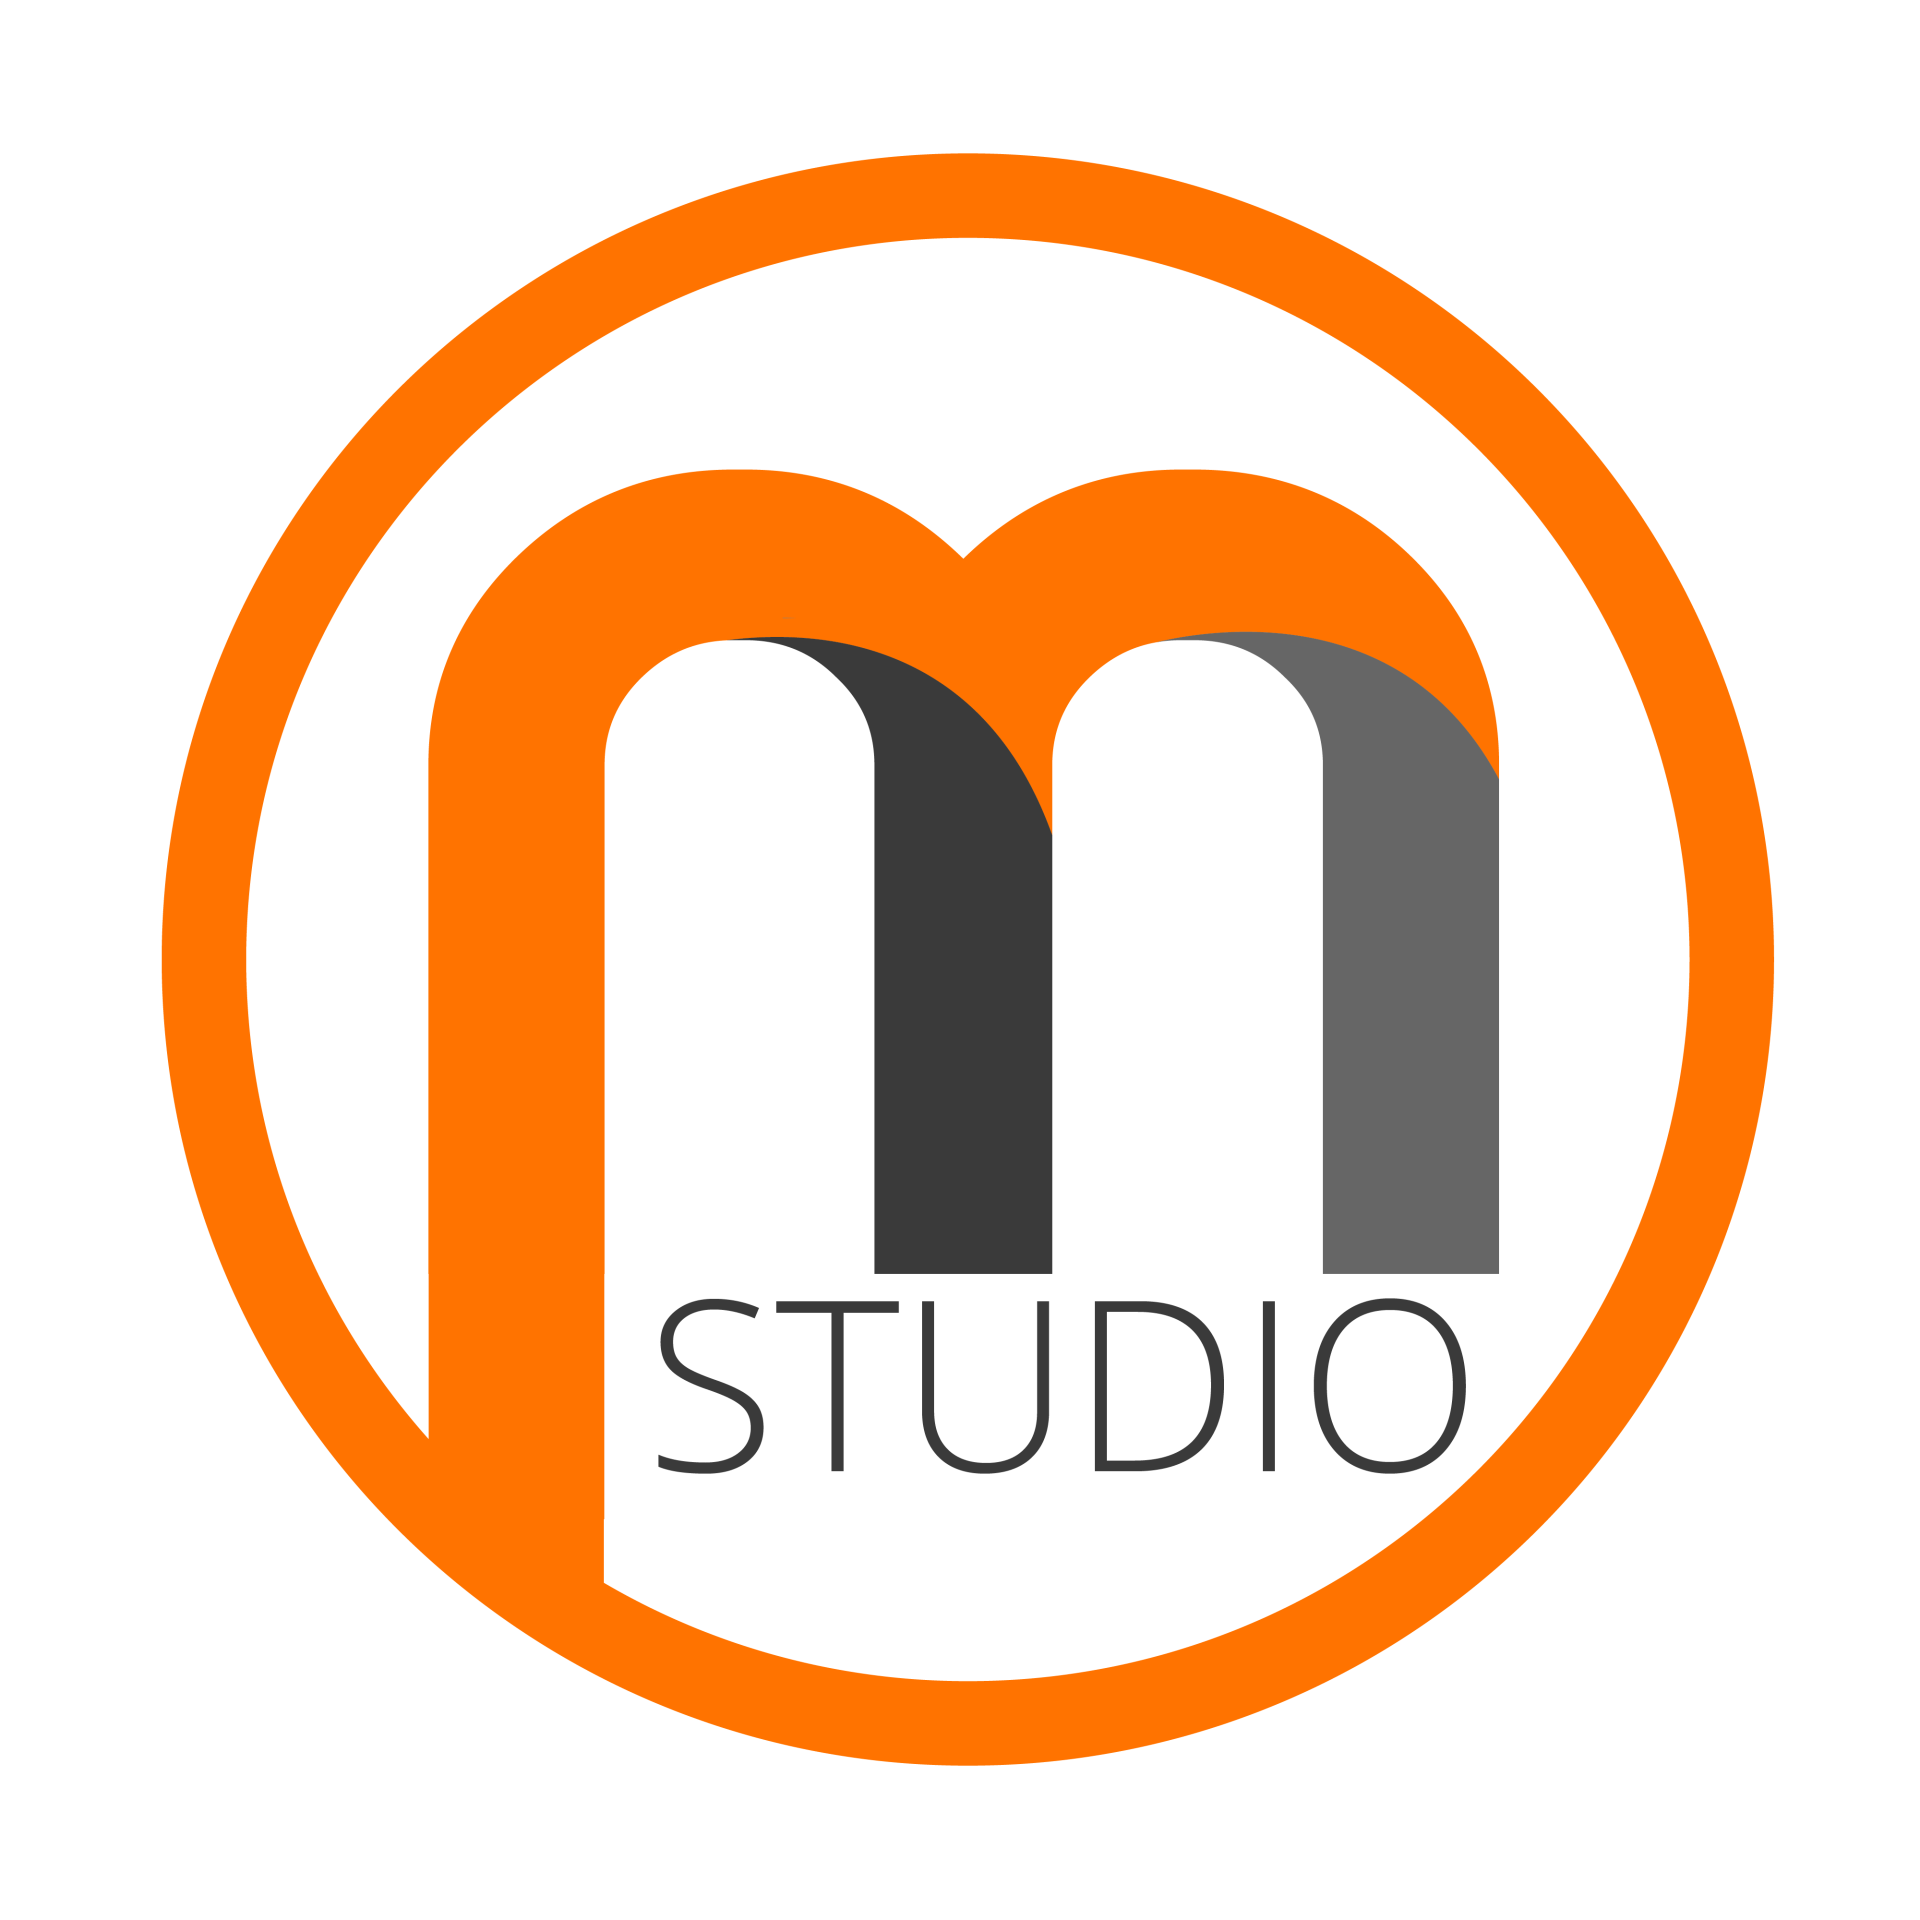 studio logo ideas 3